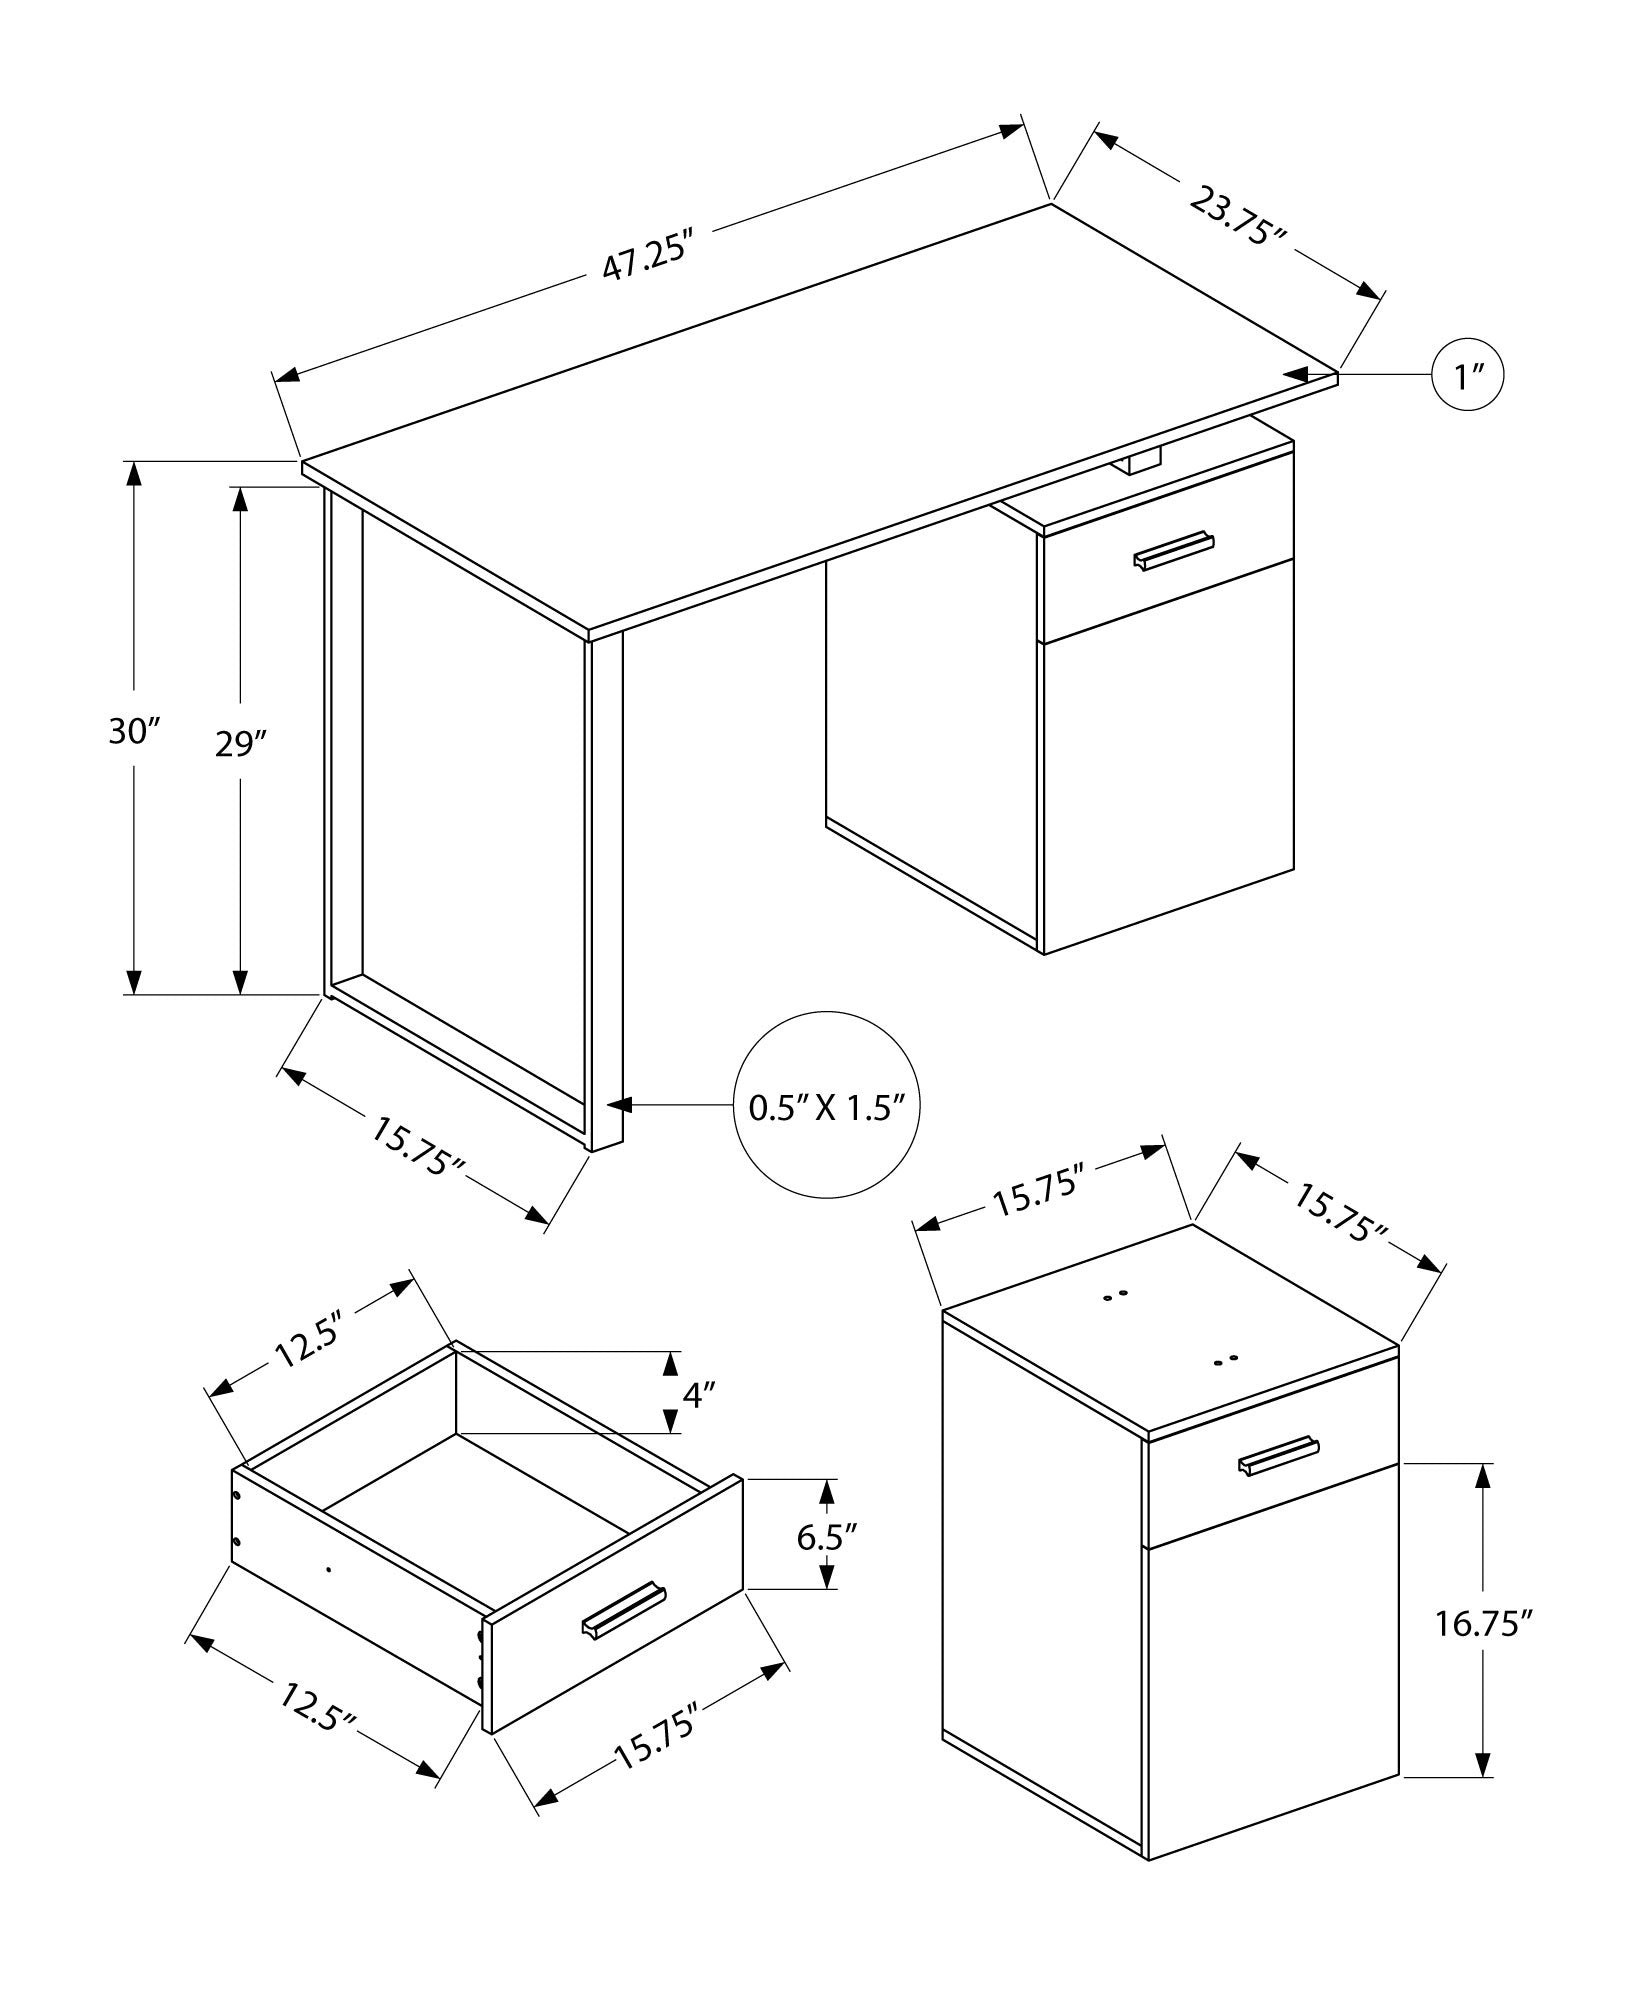 MN-167762    Computer Desk - Storage Drawer / Cabinet / Left Or Right Setup / Floating Desktop - 48"L - White Marble-Look  / Black